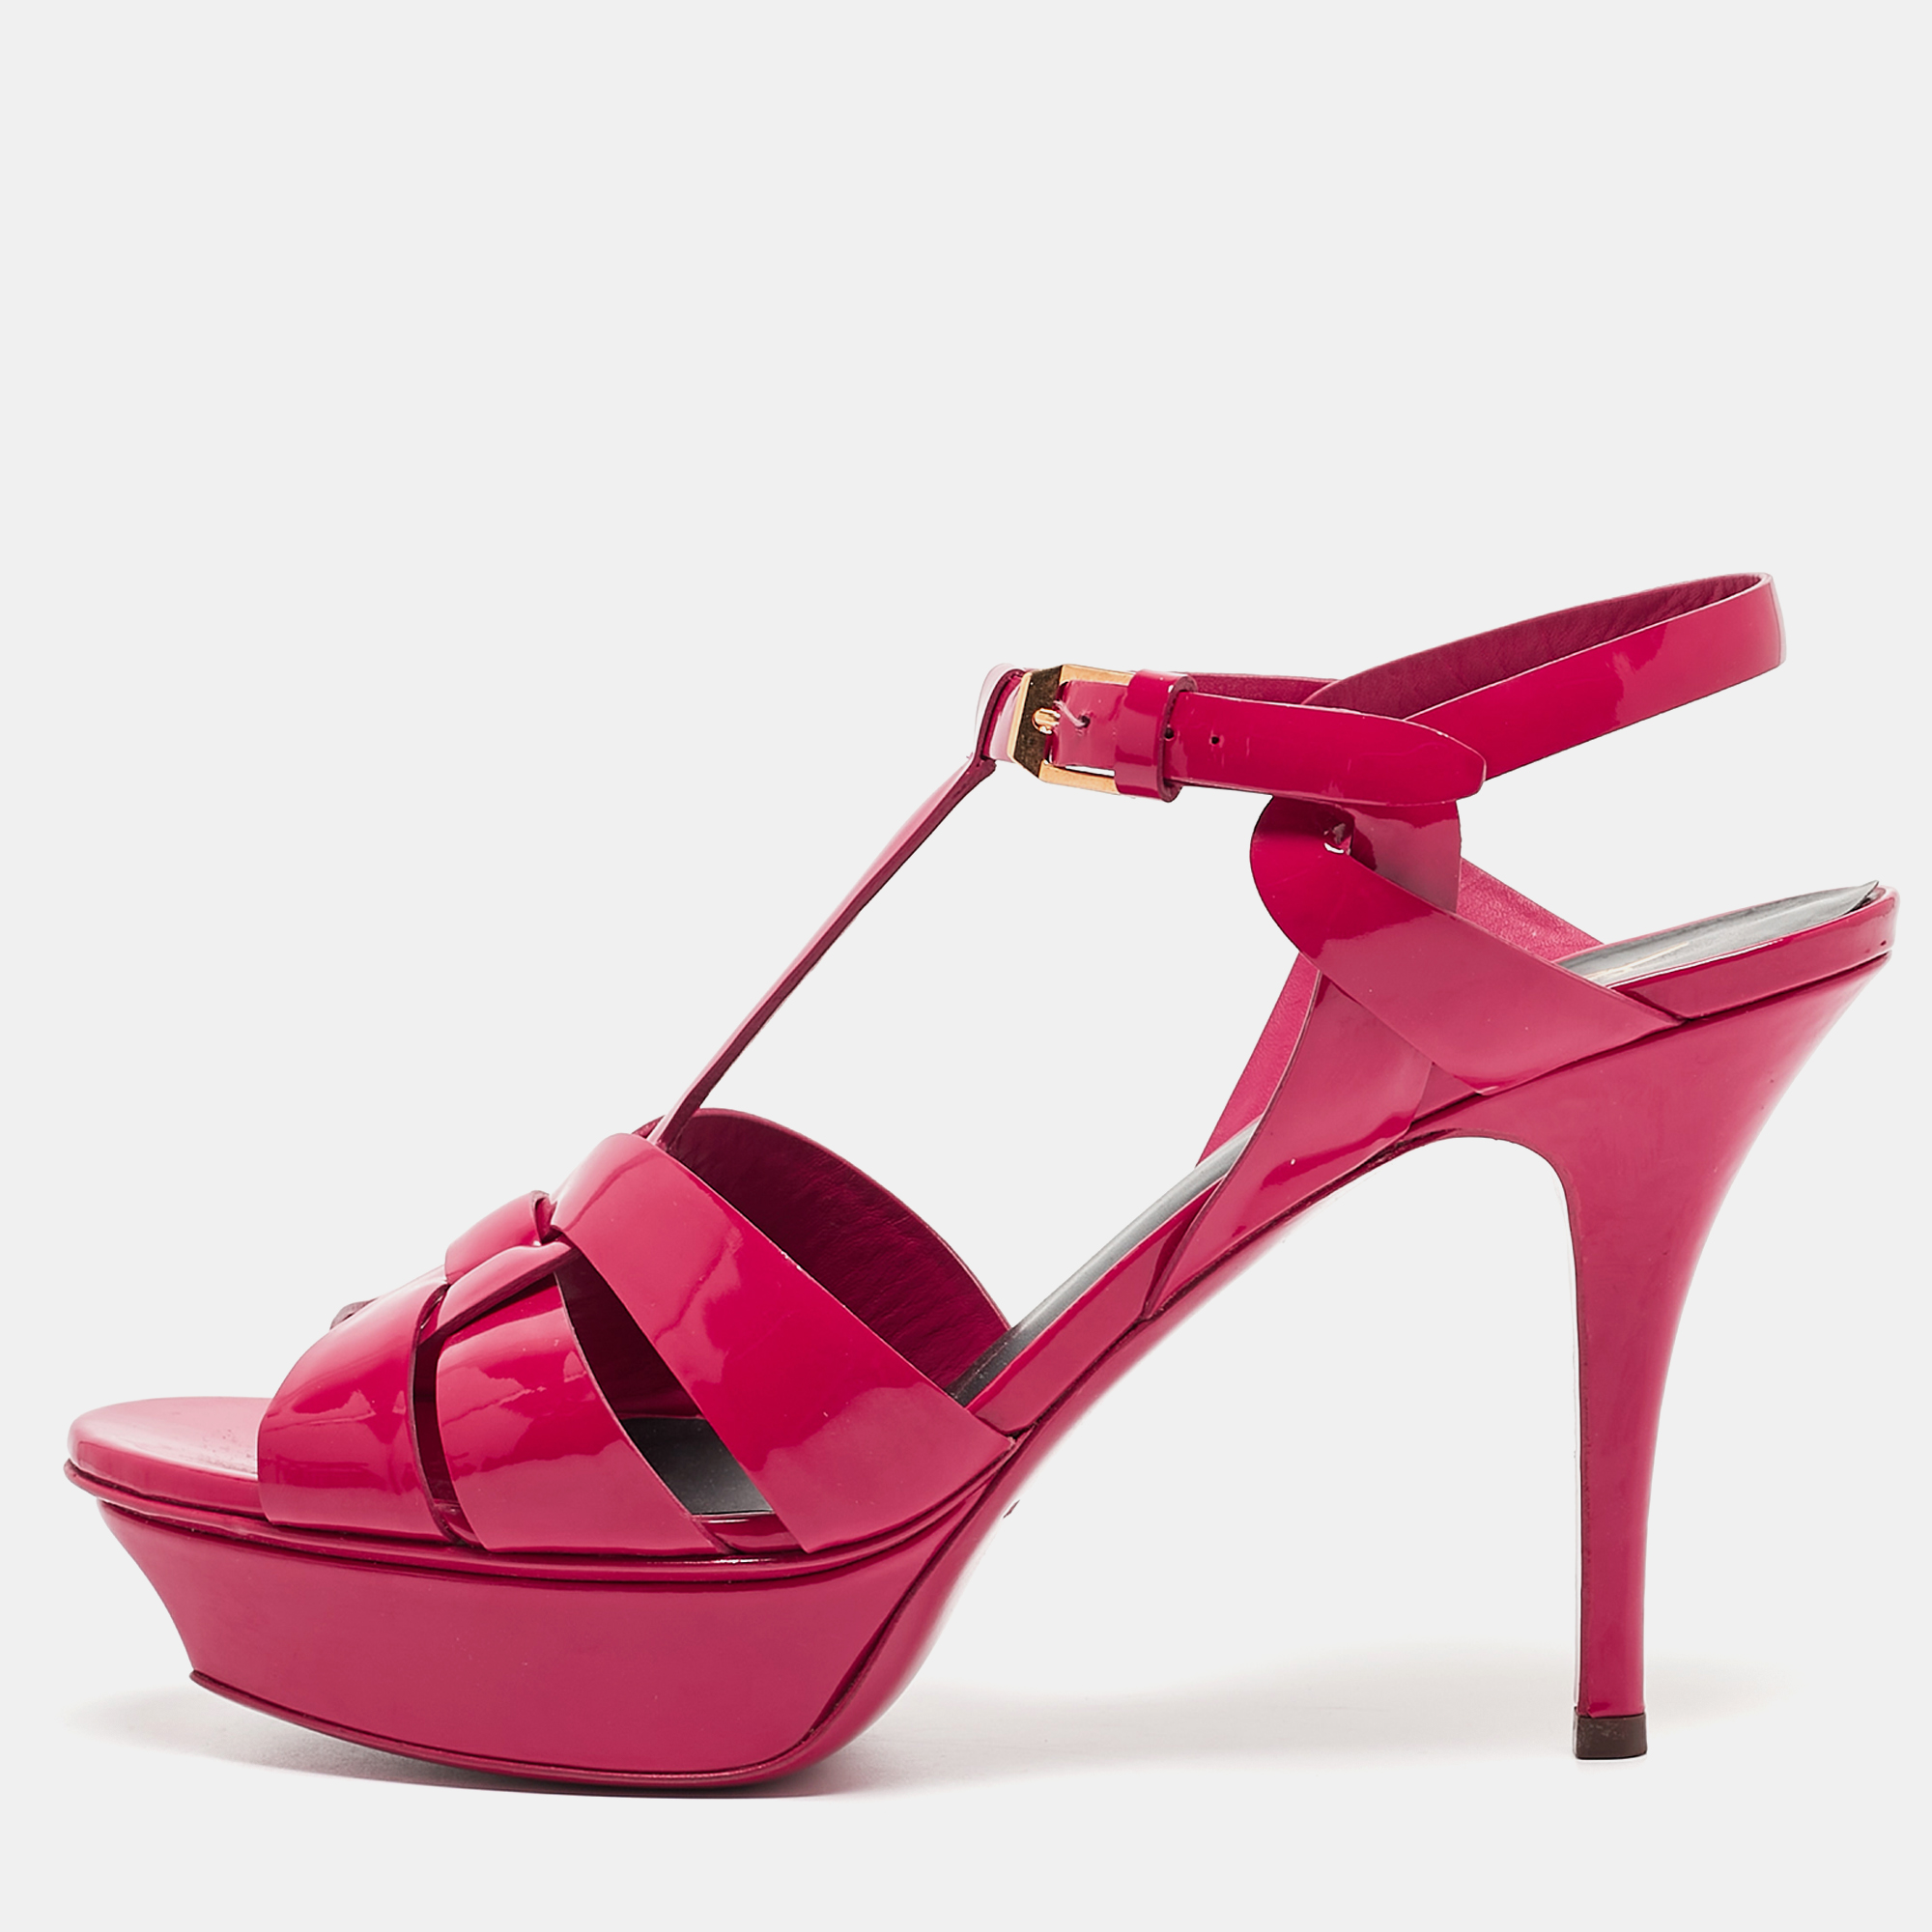 

Saint Laurent Pink Patent Leather Tribute Sandals Size